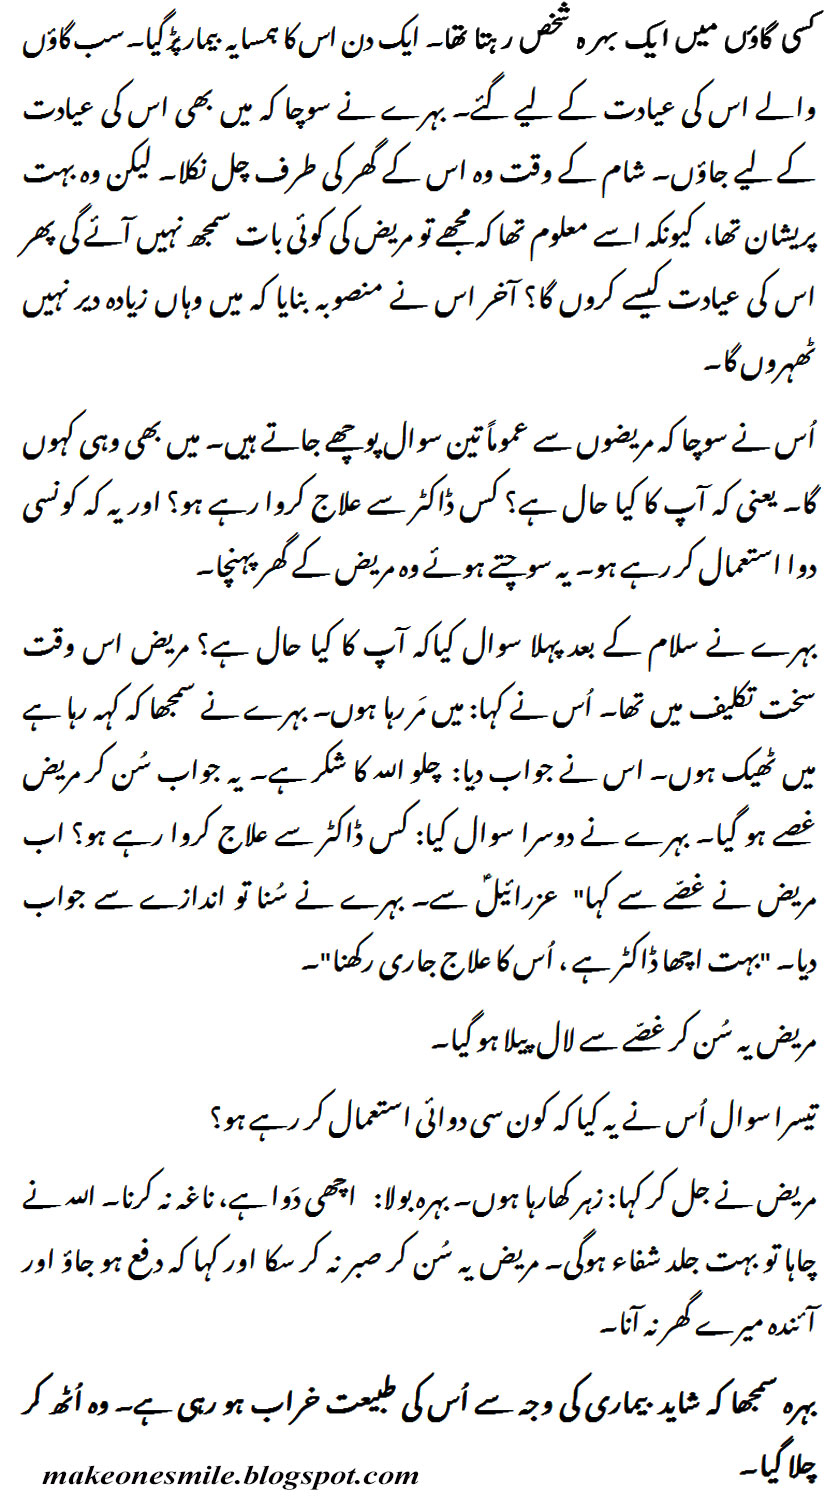 Humorous Funny Short Stories in Urdu - Ayadat (Behray Ki Beemar Pursi) |  Very Interesting Stories - Make One Smile